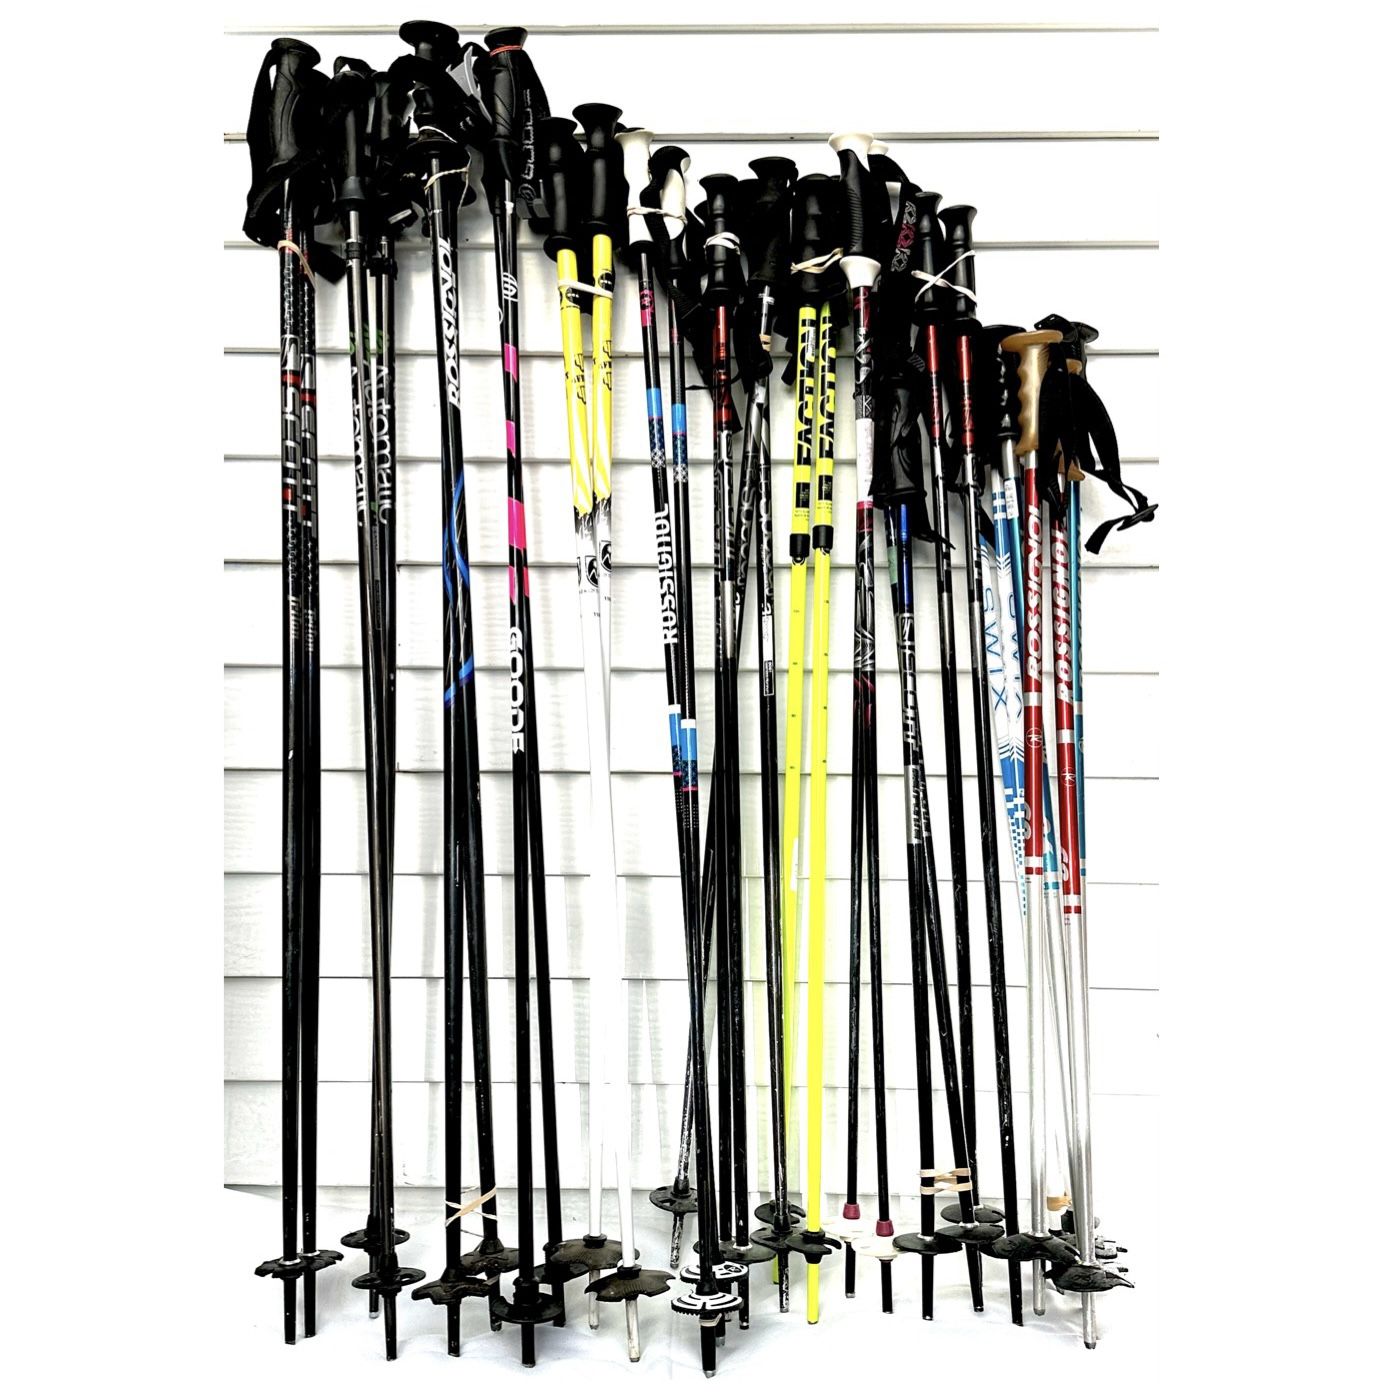 Ski poles 38 - 46 inch 